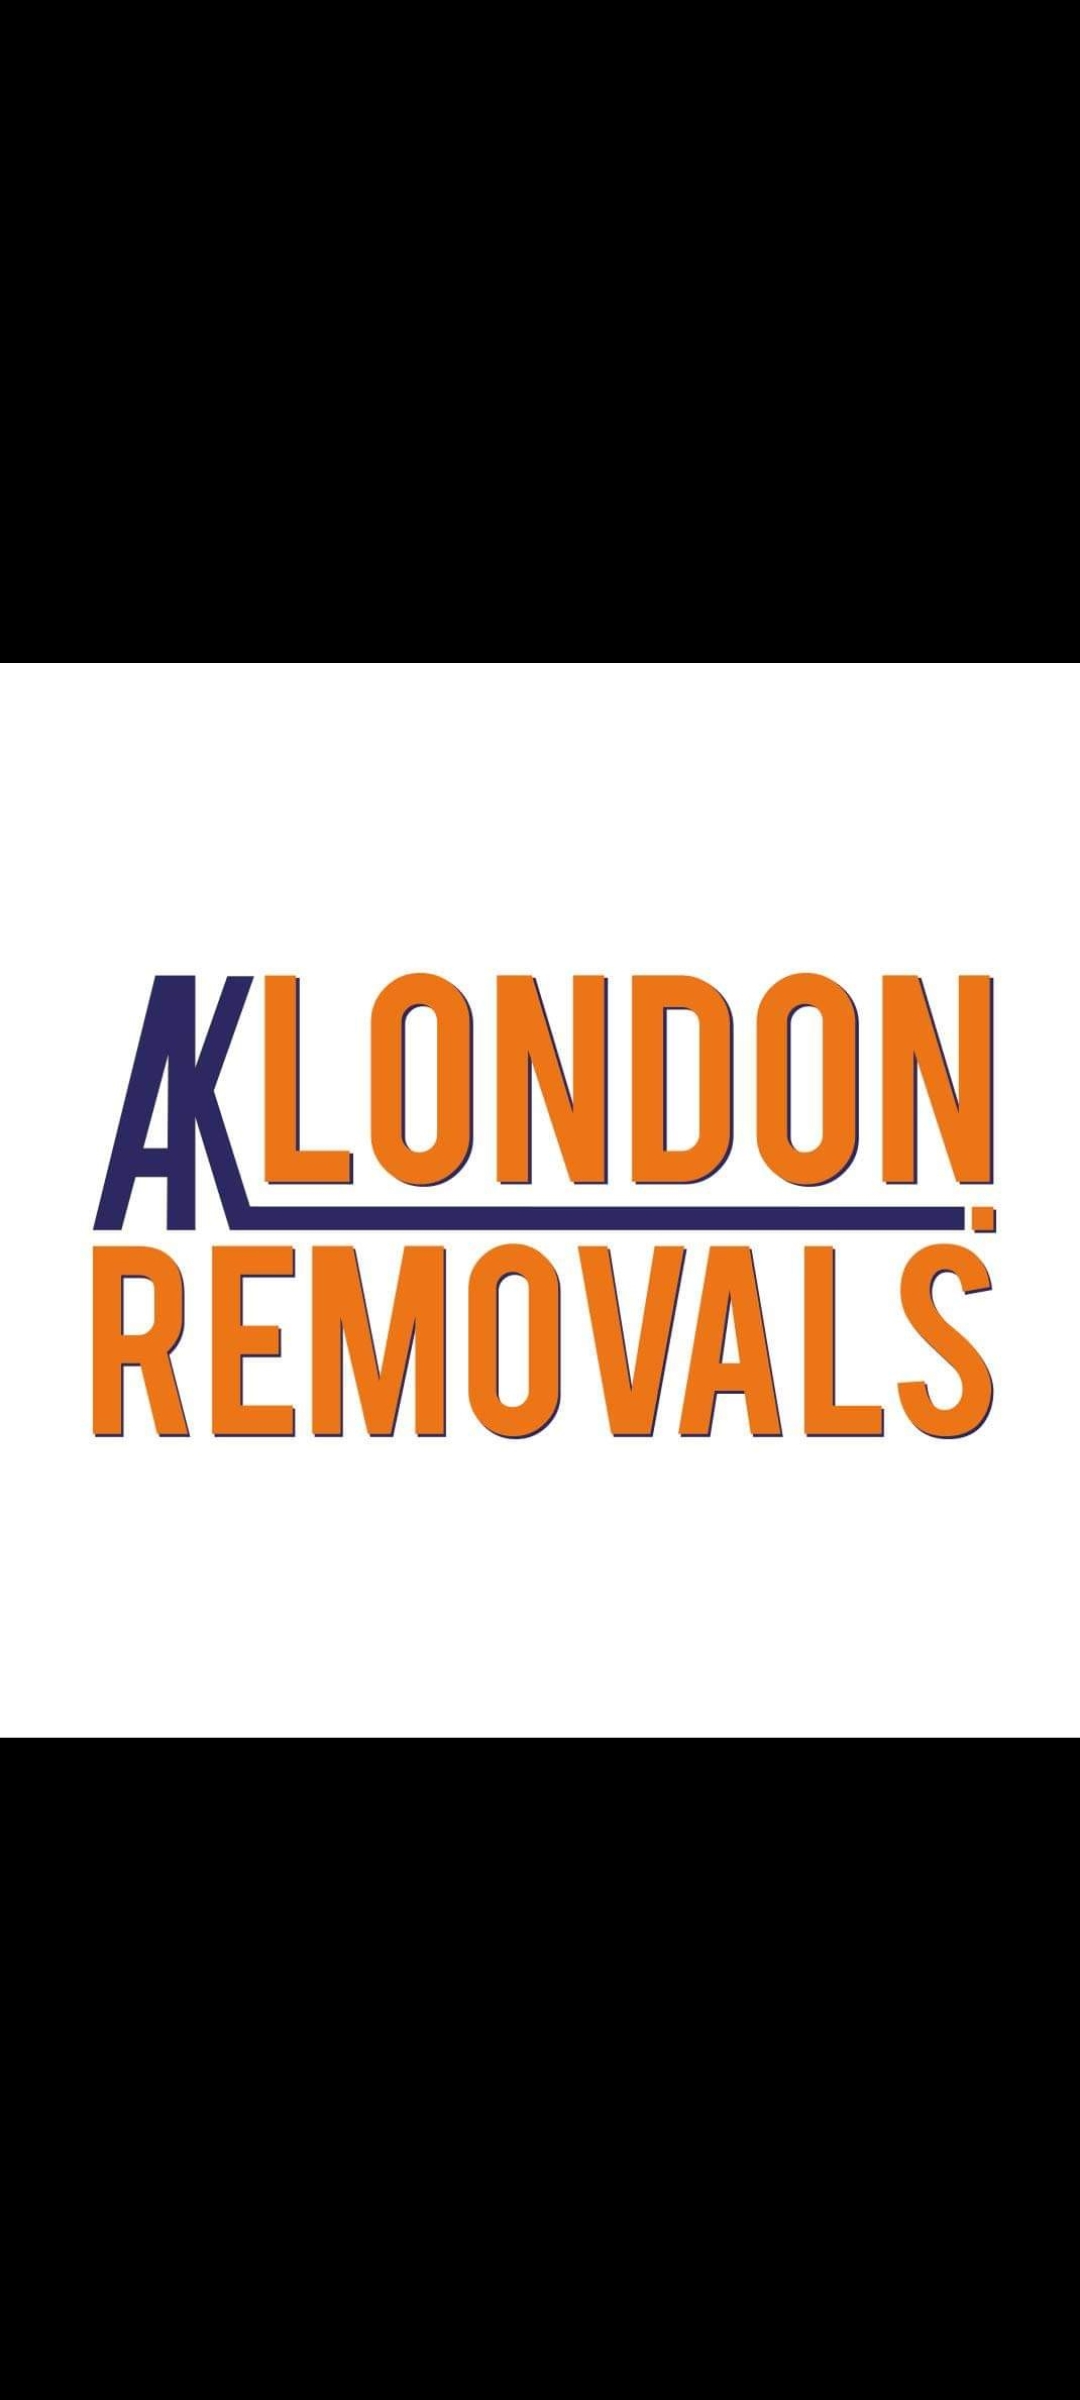 AK London Removals logo